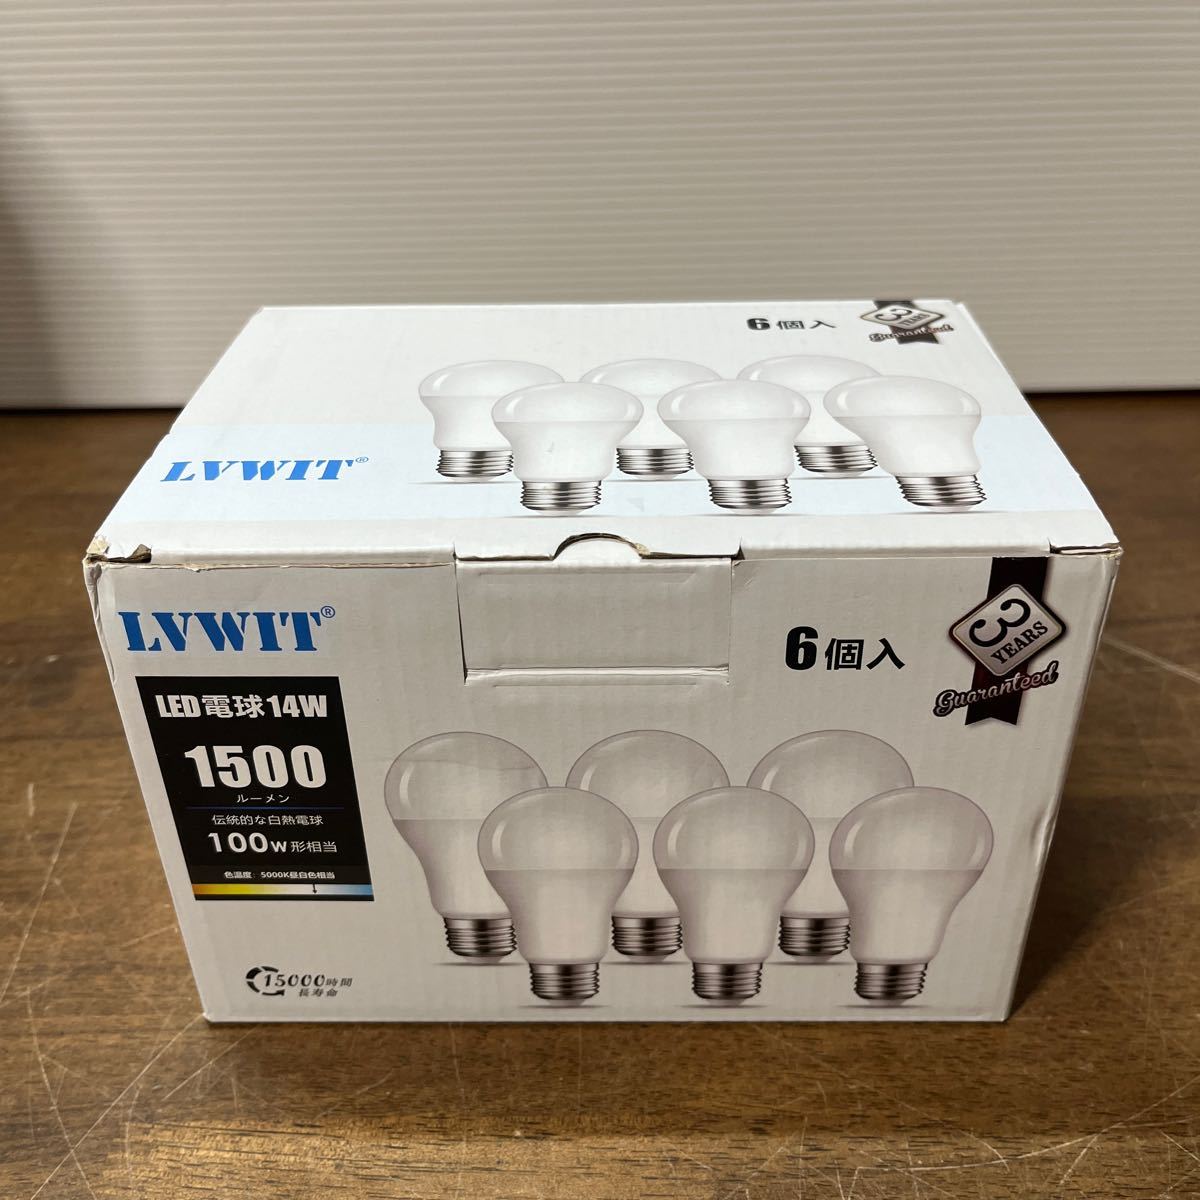 LVWIT LED電球 E26口金 100W形相当 14W 1500LM 昼白色 5000K 省エネ 高輝度 調光器非対応 6個入 (3-2_画像1